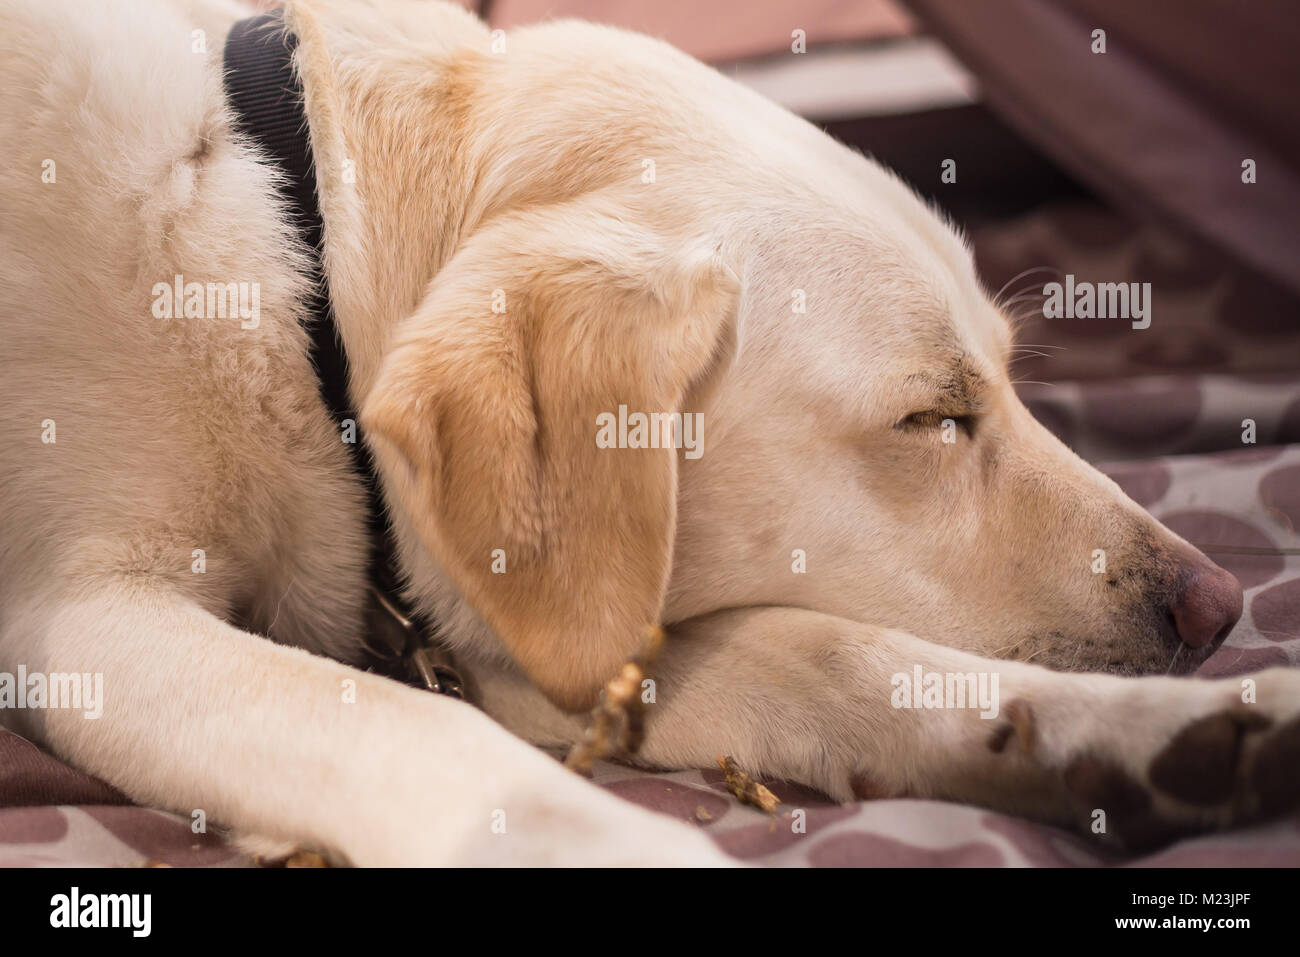 Labrador retriever asleep. Stock Photo